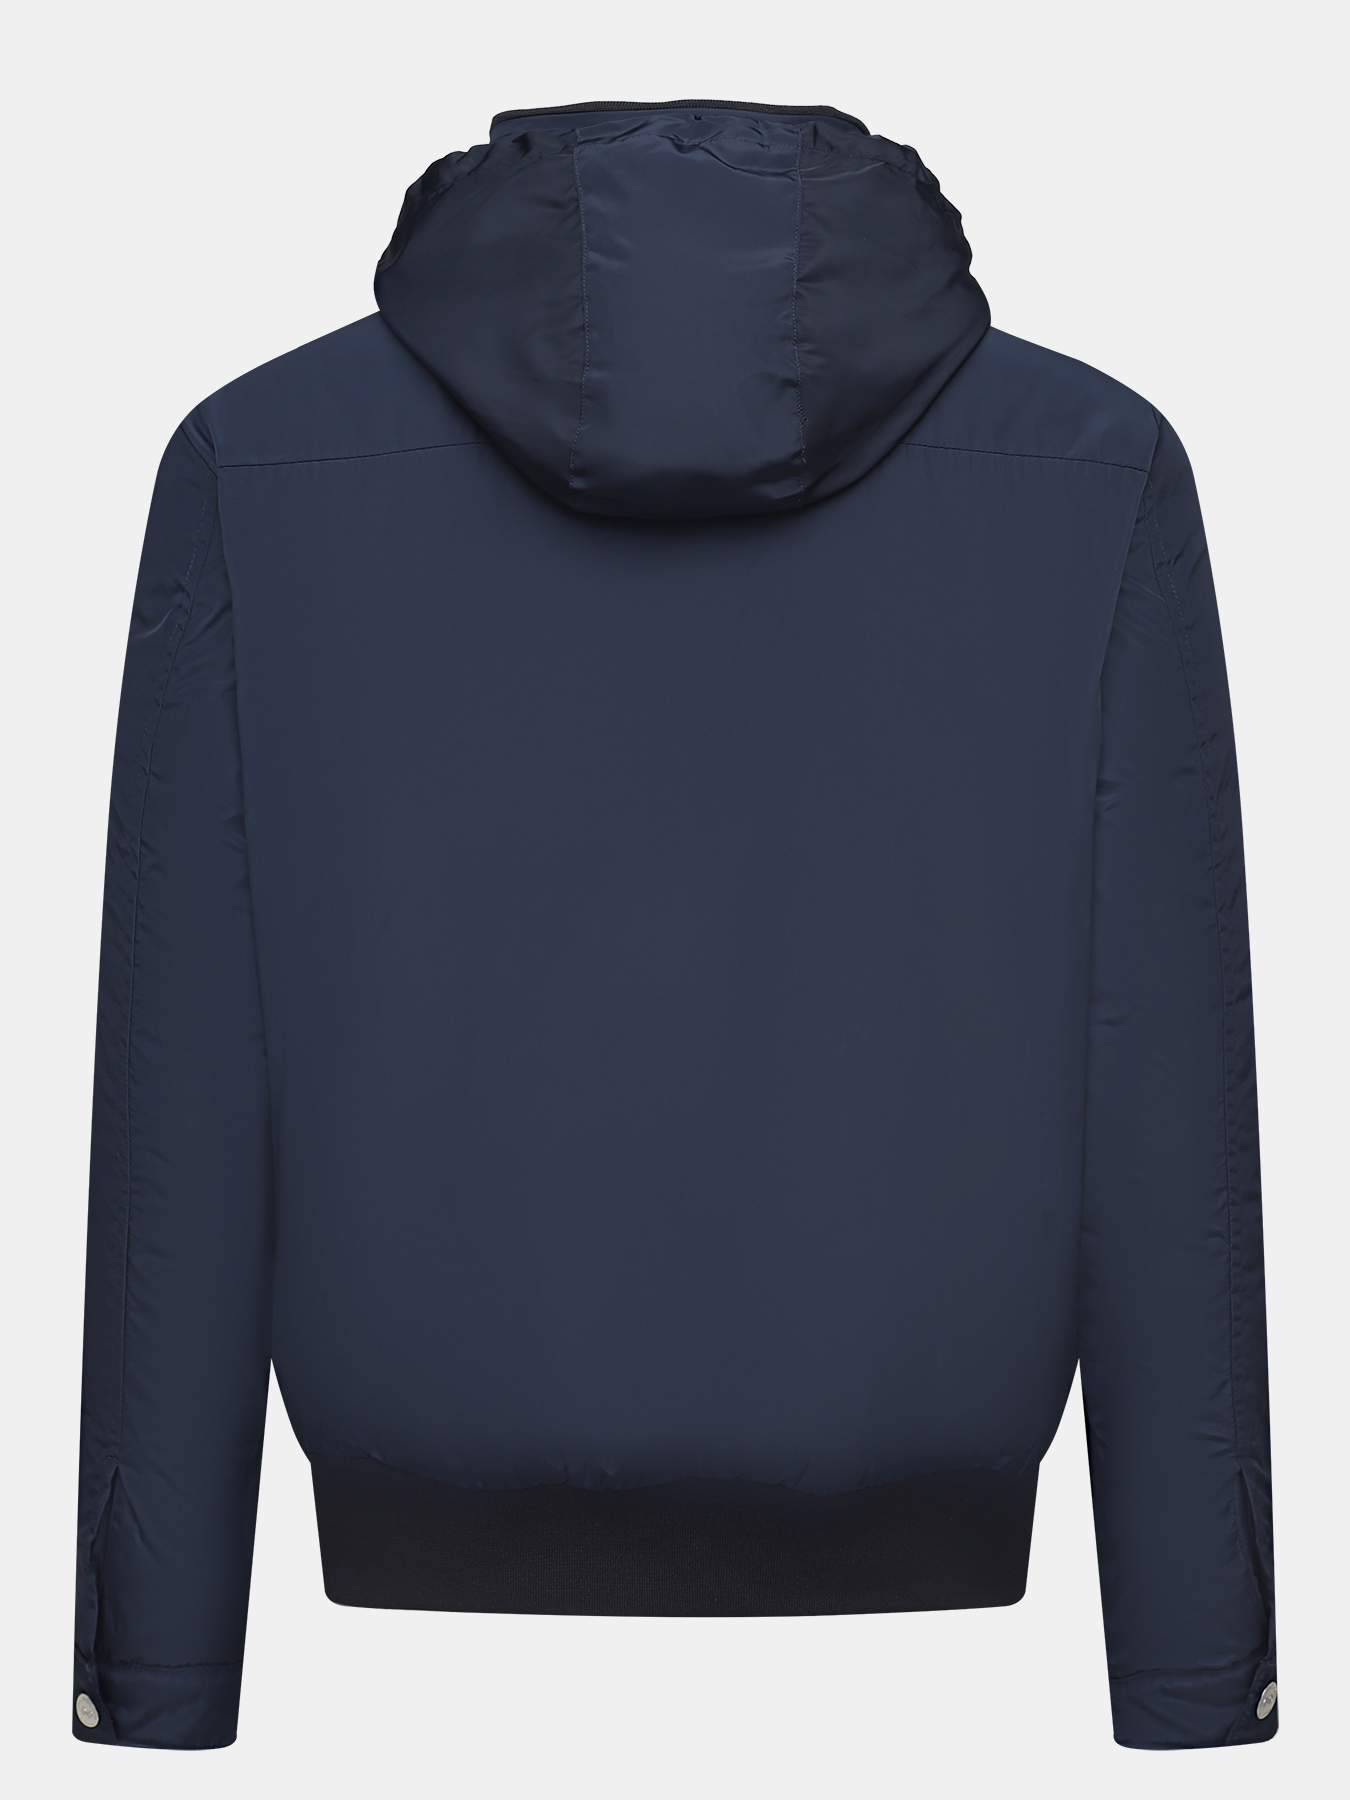 Куртка Alessandro Manzoni Yachting 379540-029, цвет темно-синий, размер 56 - фото 4